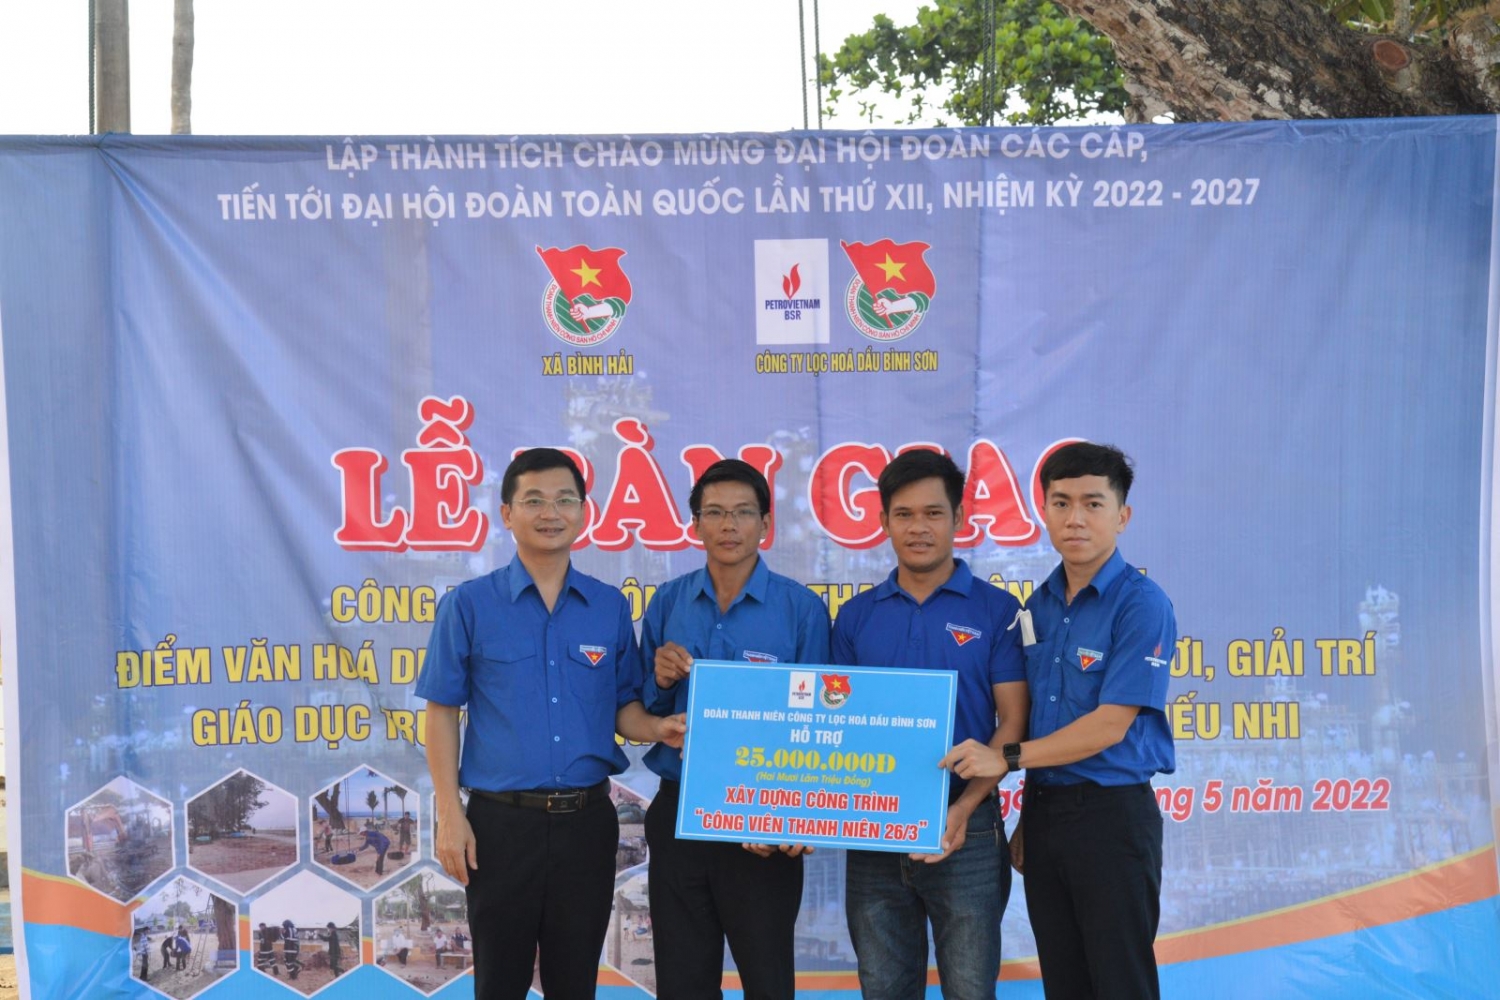 Đoàn Thanh niên BSR tài trợ công trình “Công viên Thanh niên 26/3” cho xã Bình Hải, huyện Bình Sơn, tỉnh Quảng Ngãi